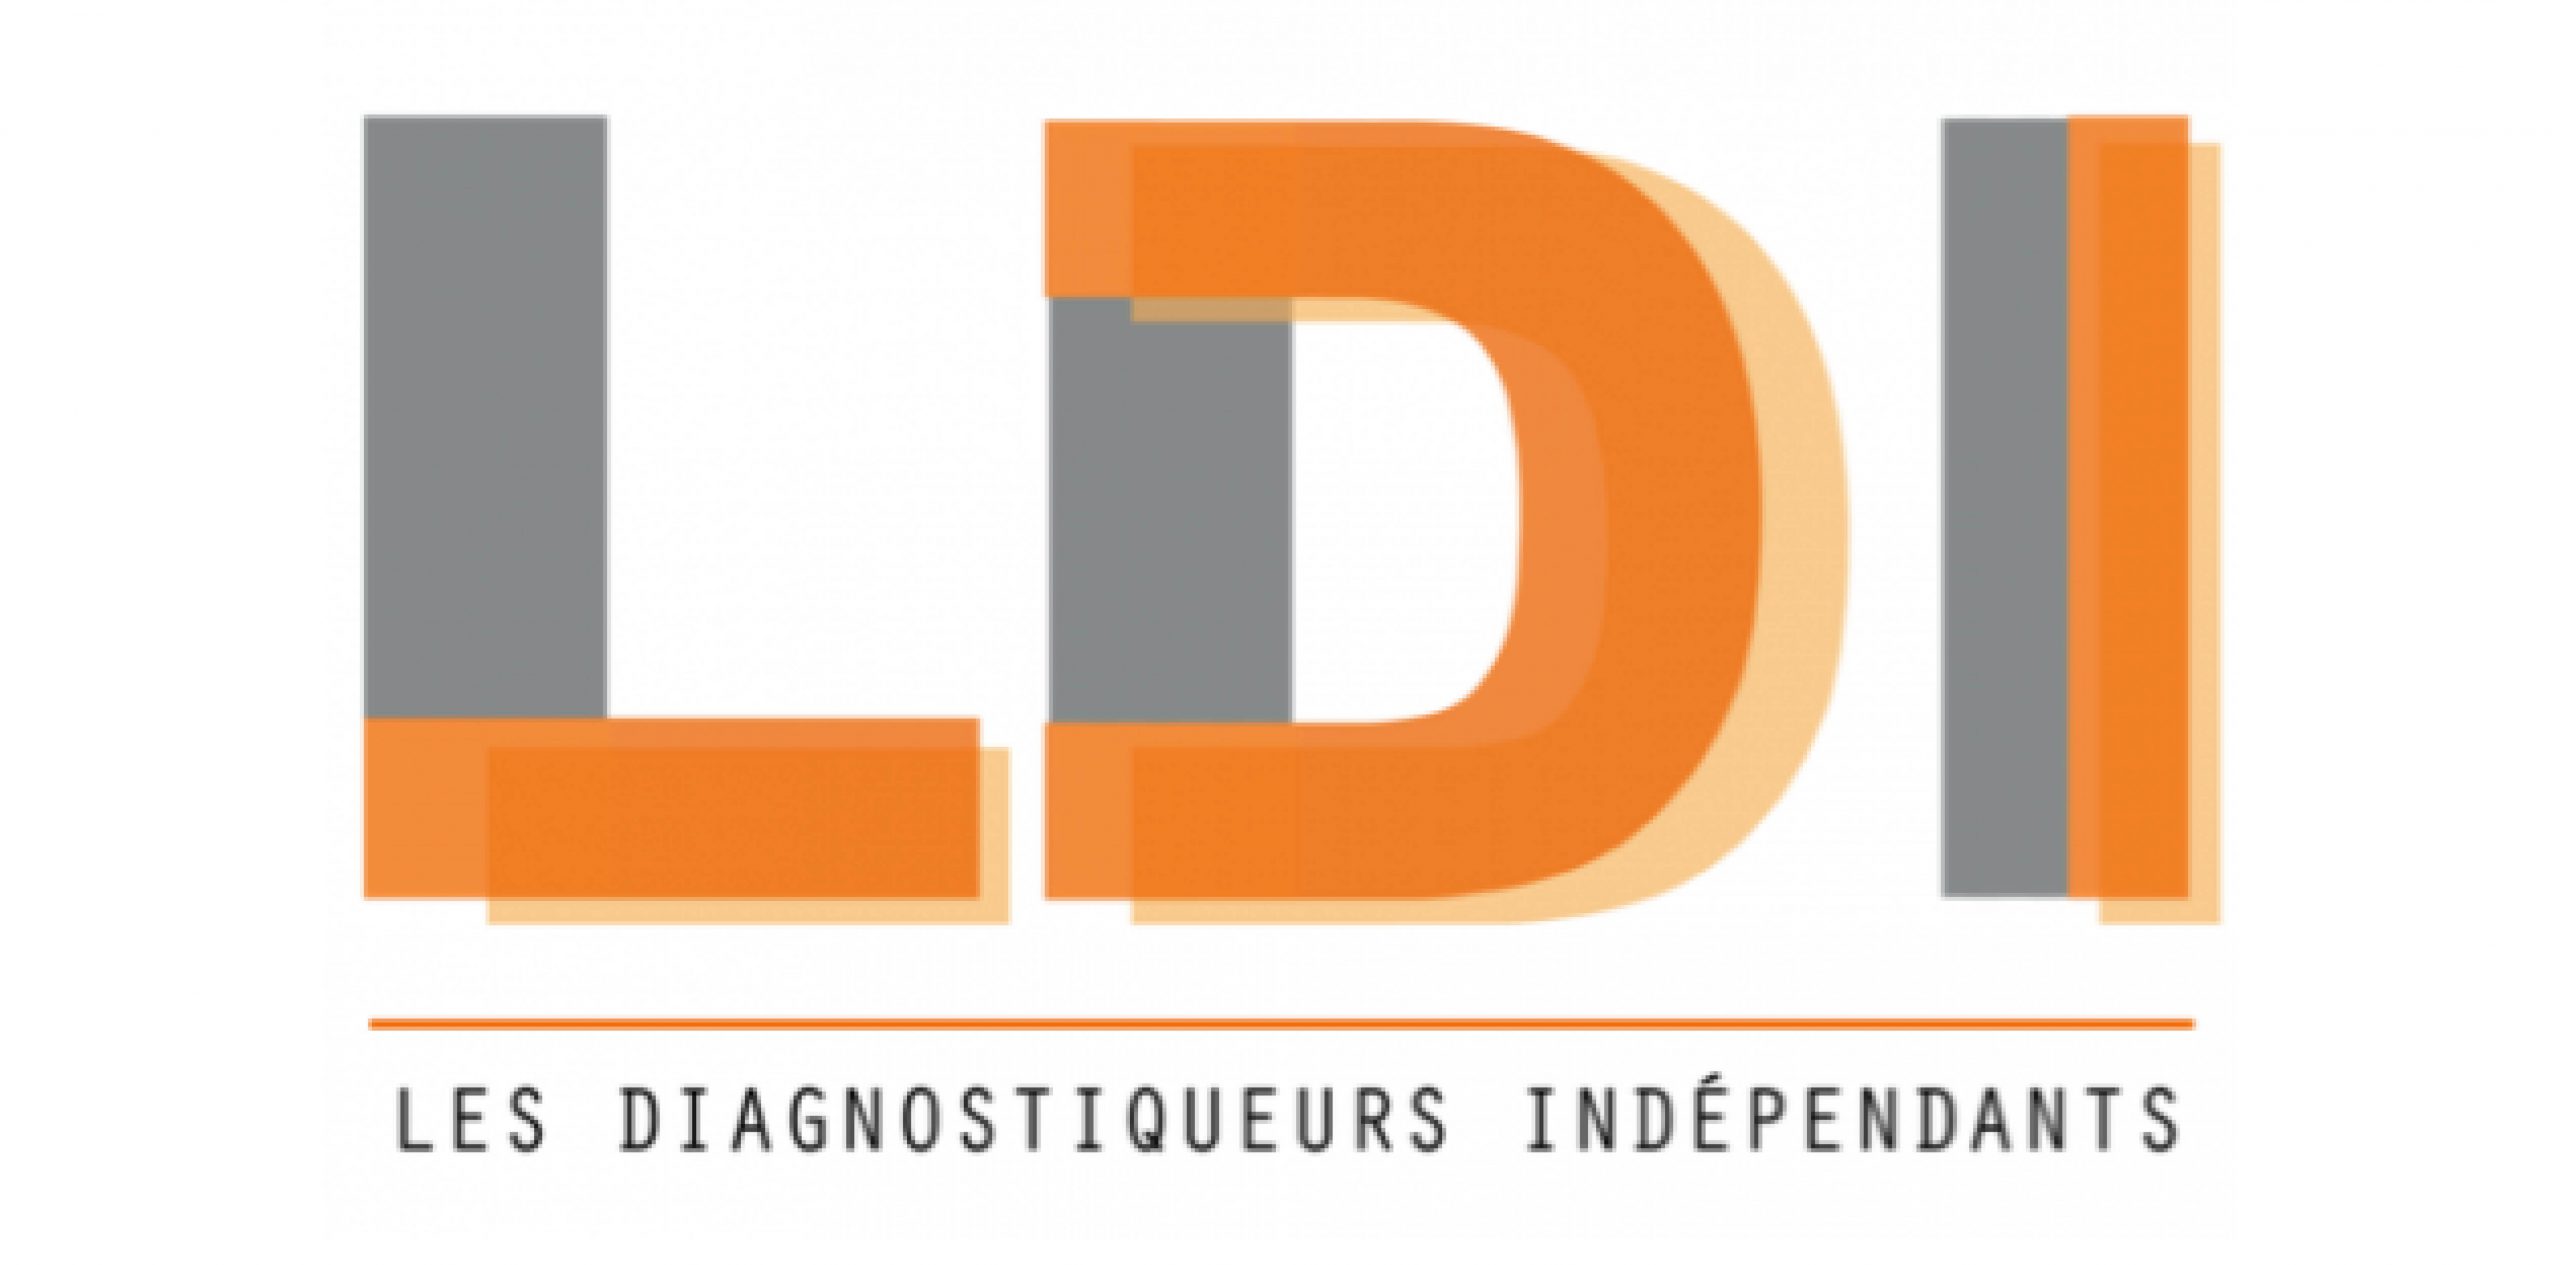 Les Diagnostiqueurs indépendants (LDI)